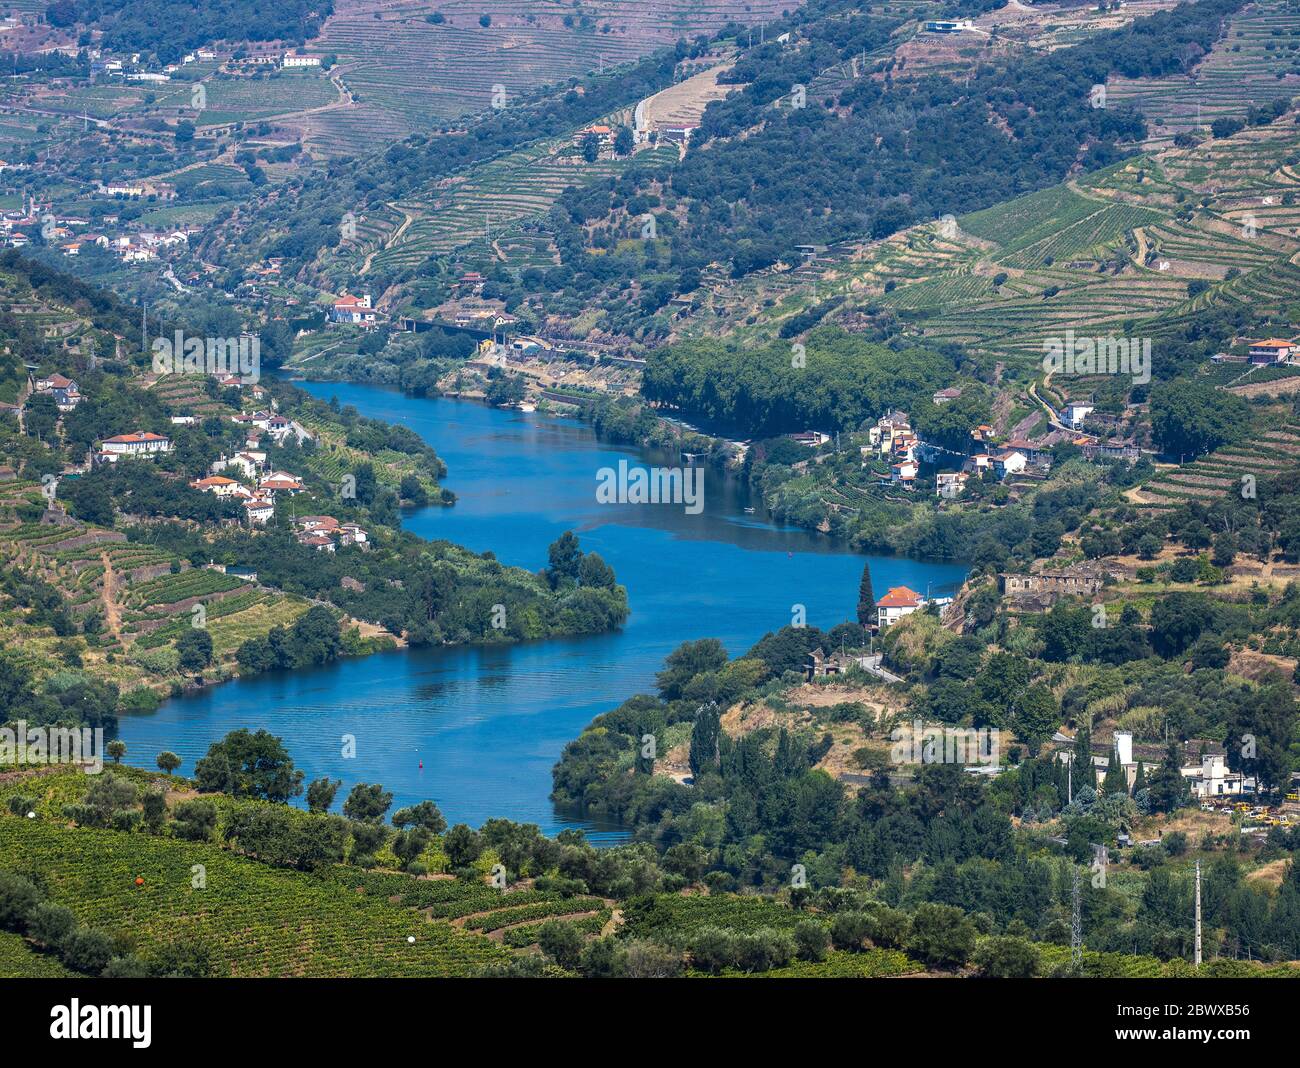 Le fleuve Douro dans la vallée entouré de vignobles en terrasse le long de la région du Douro, dans le nord du Portugal Banque D'Images